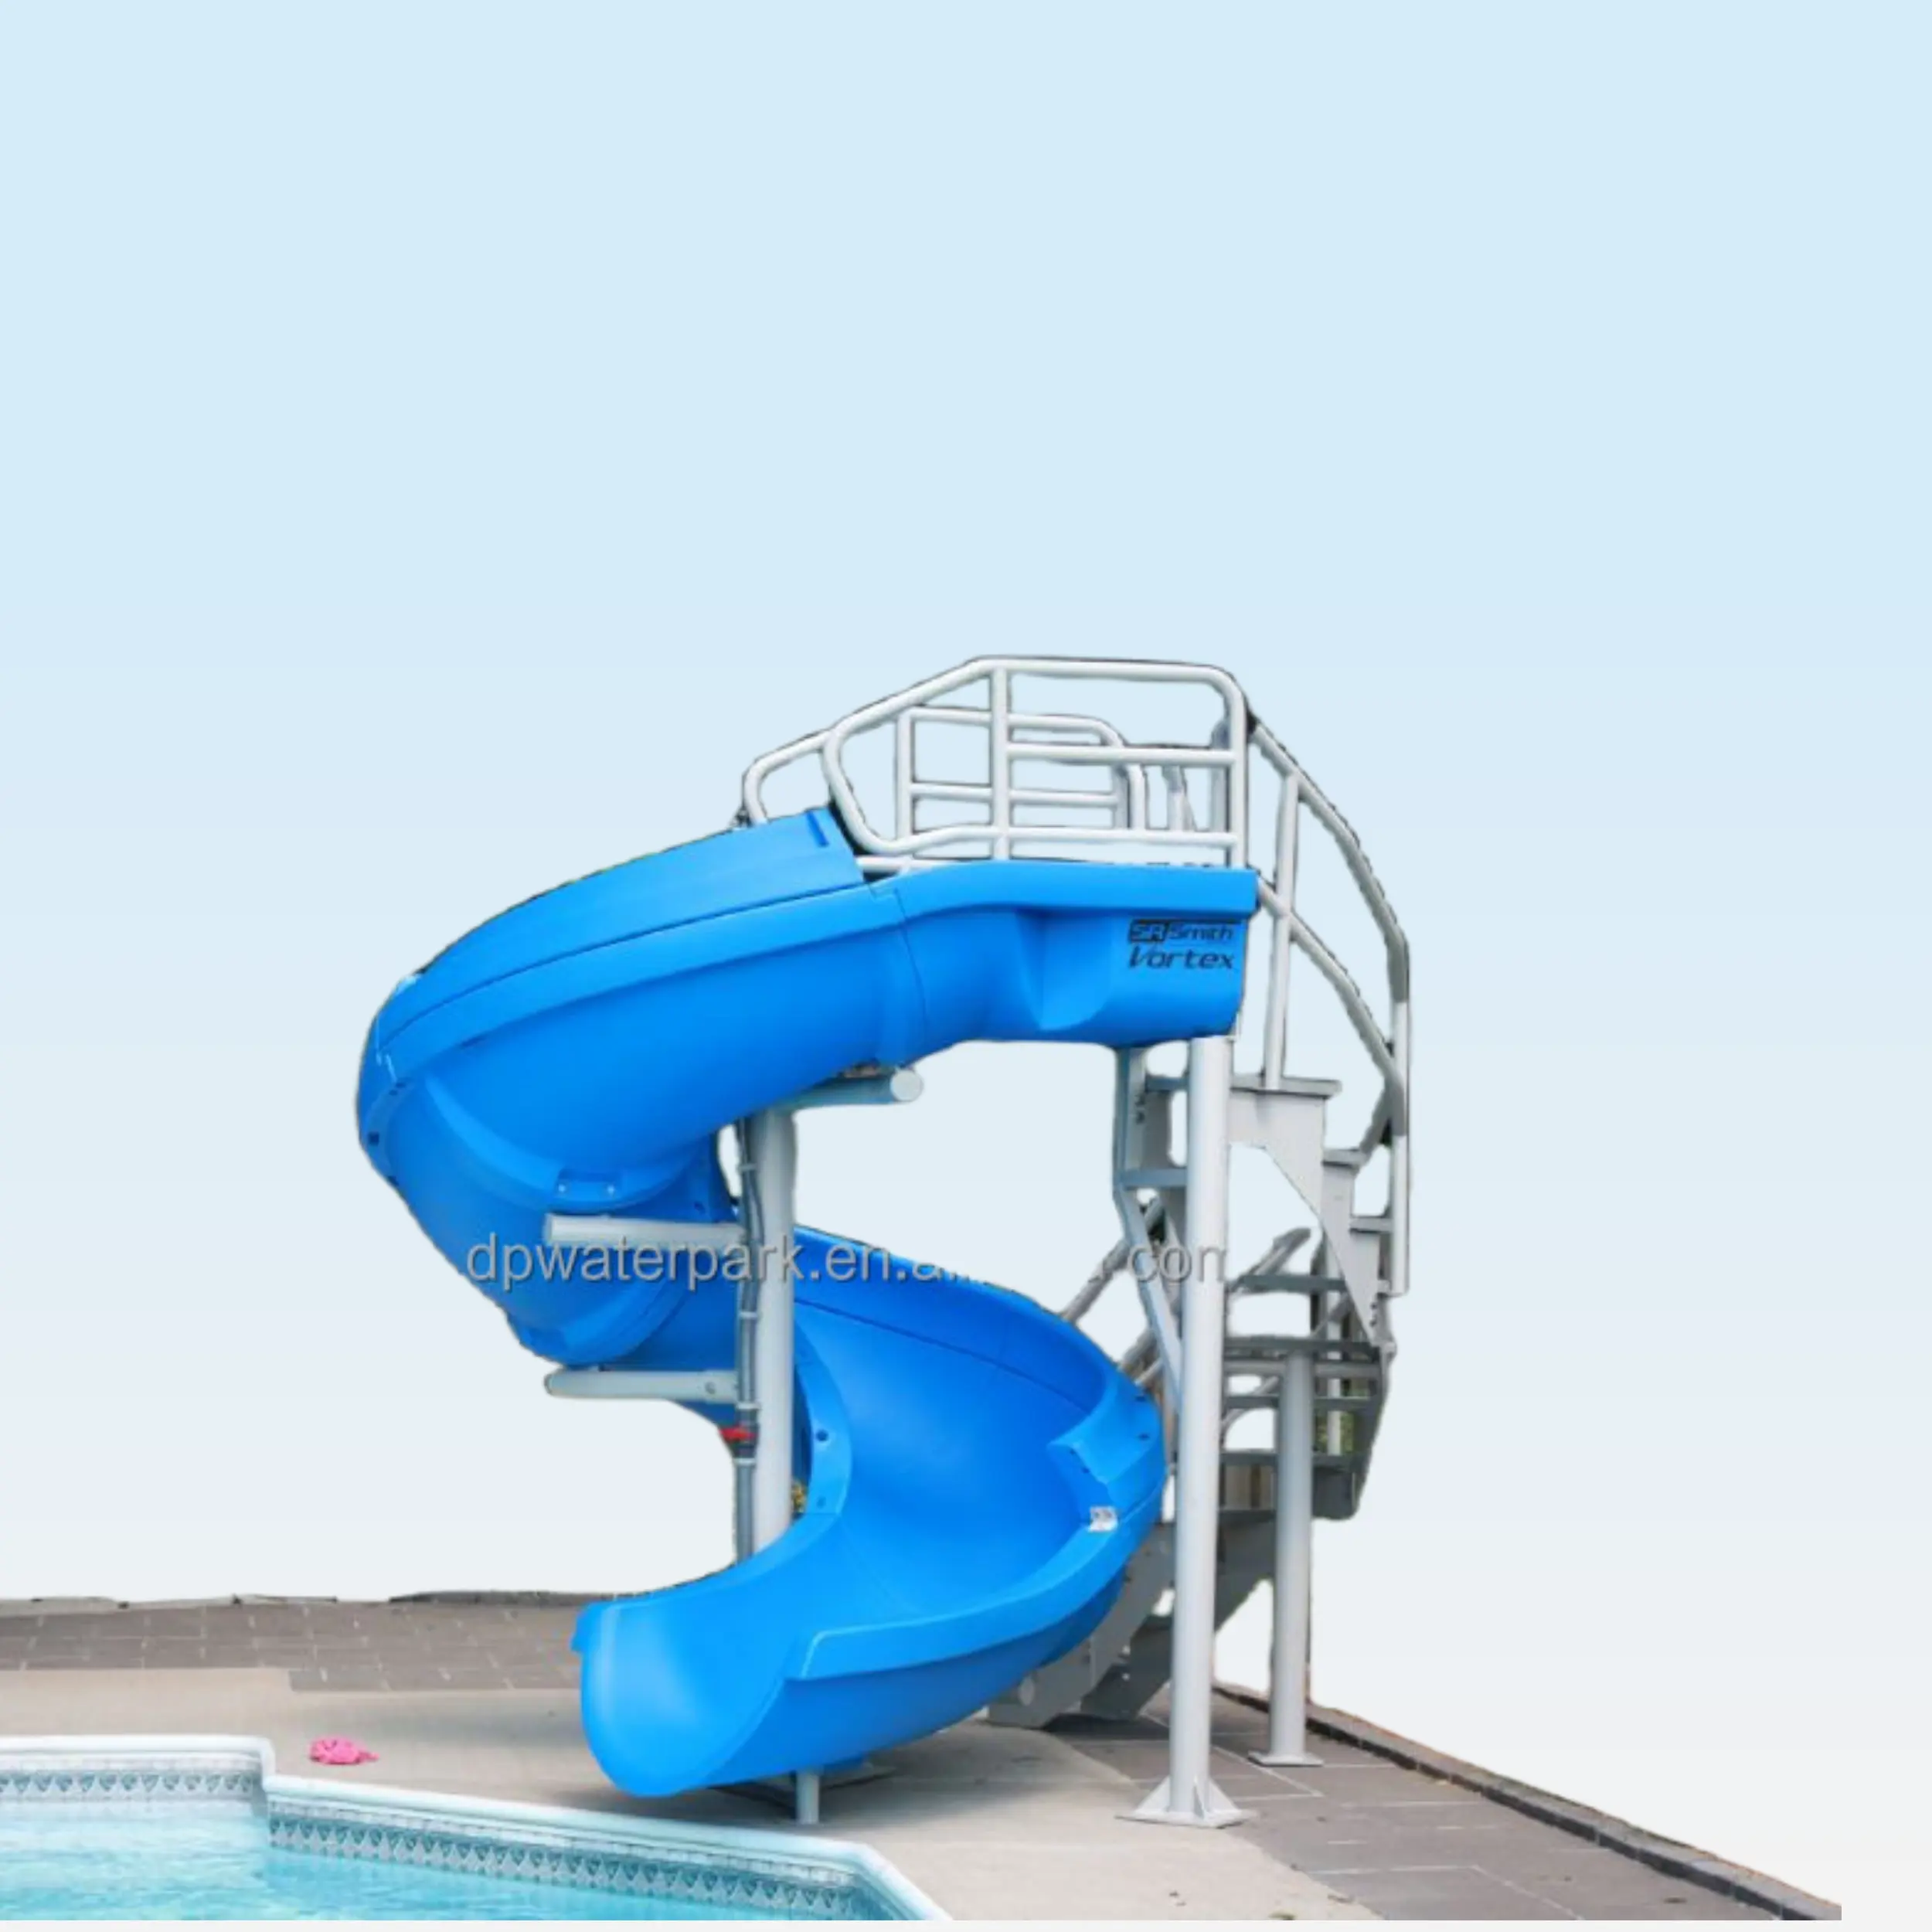 निर्मित वॉटर पार्क मनोरंजन वाणिज्यिक स्विमिंग पूल फाइबरग्लास स्लाइड चीन बच्चों के खेल के मैदान के लिए इनडोर स्लाइड प्लास्टिक